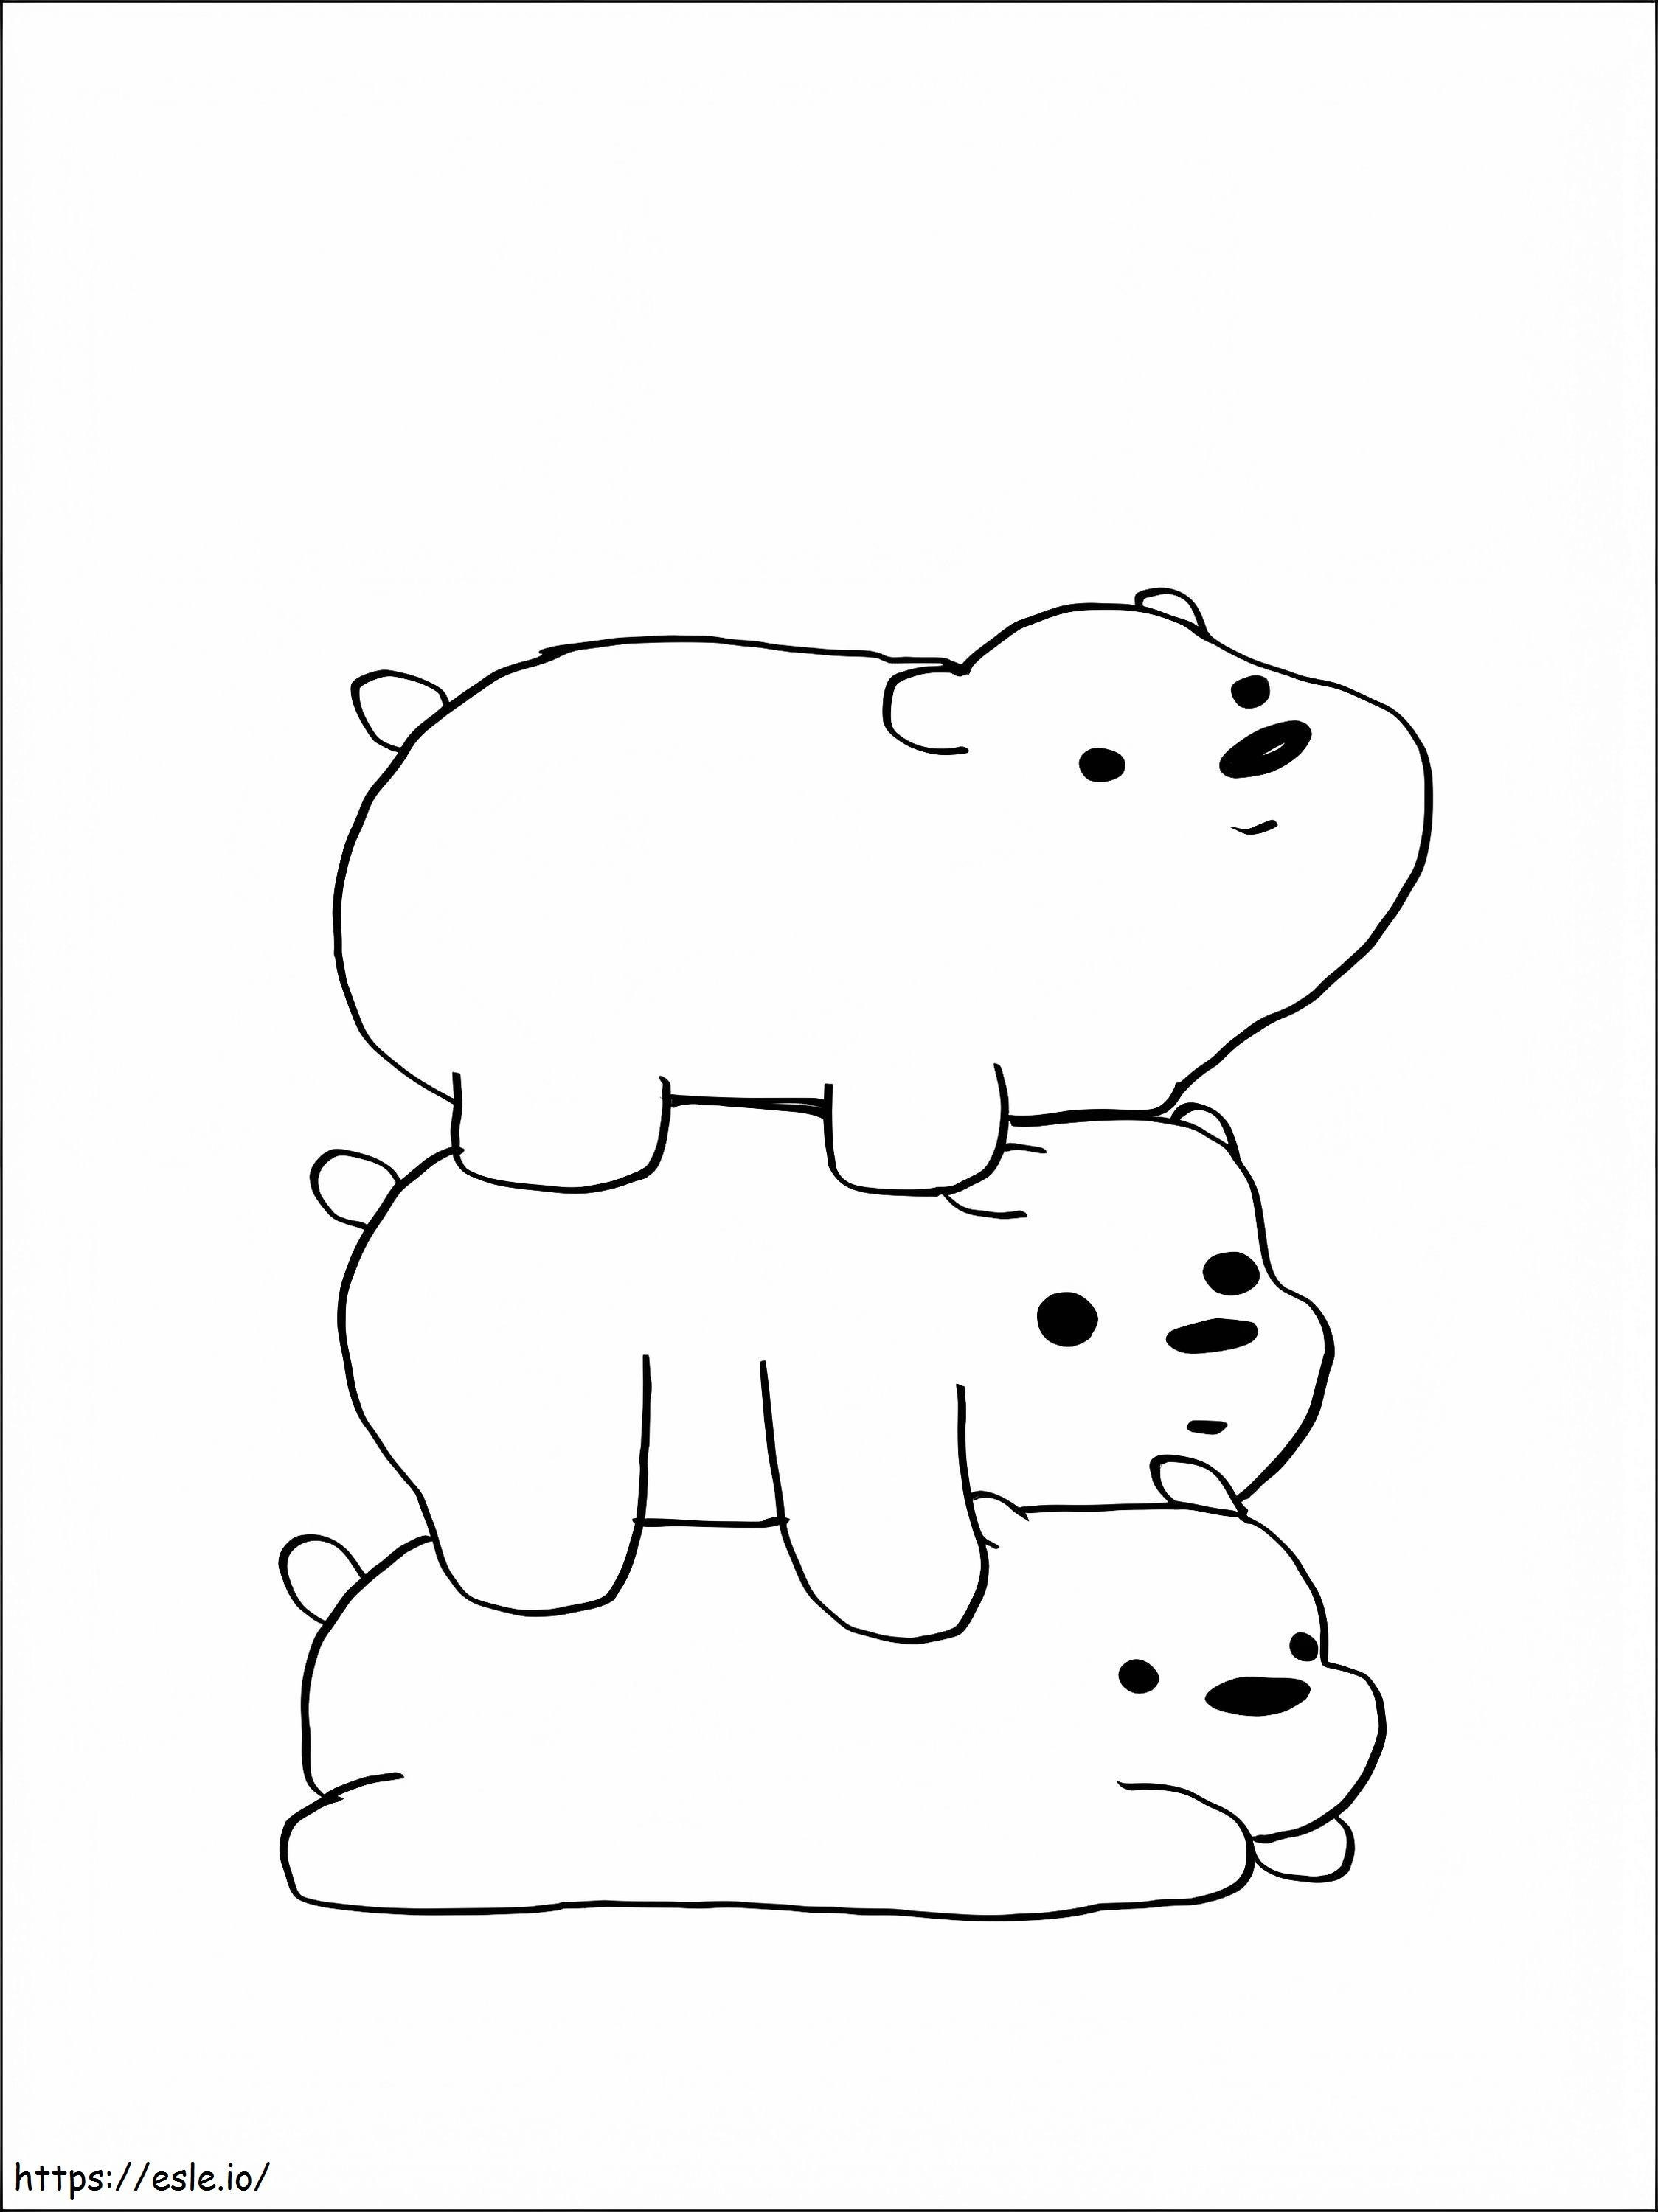 Coloriage Trois ours couchés à imprimer dessin